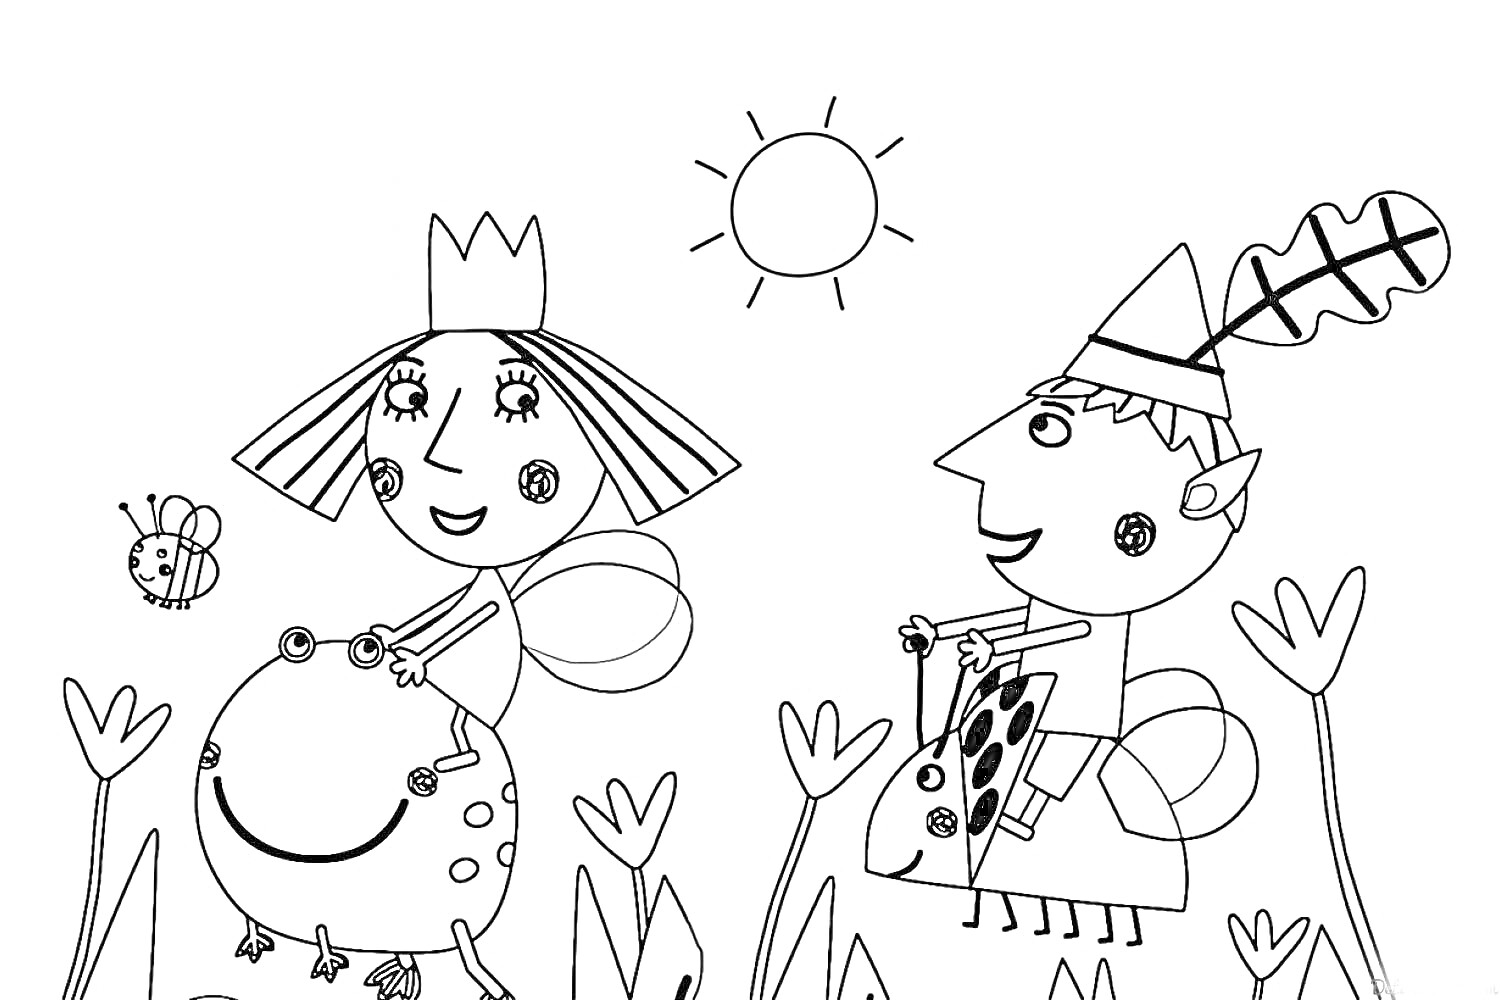 Раскраска Девочка с короной верхом на лягушке, мальчик в колпаке верхом на божьей коровке, солнышко, бабочка, растения